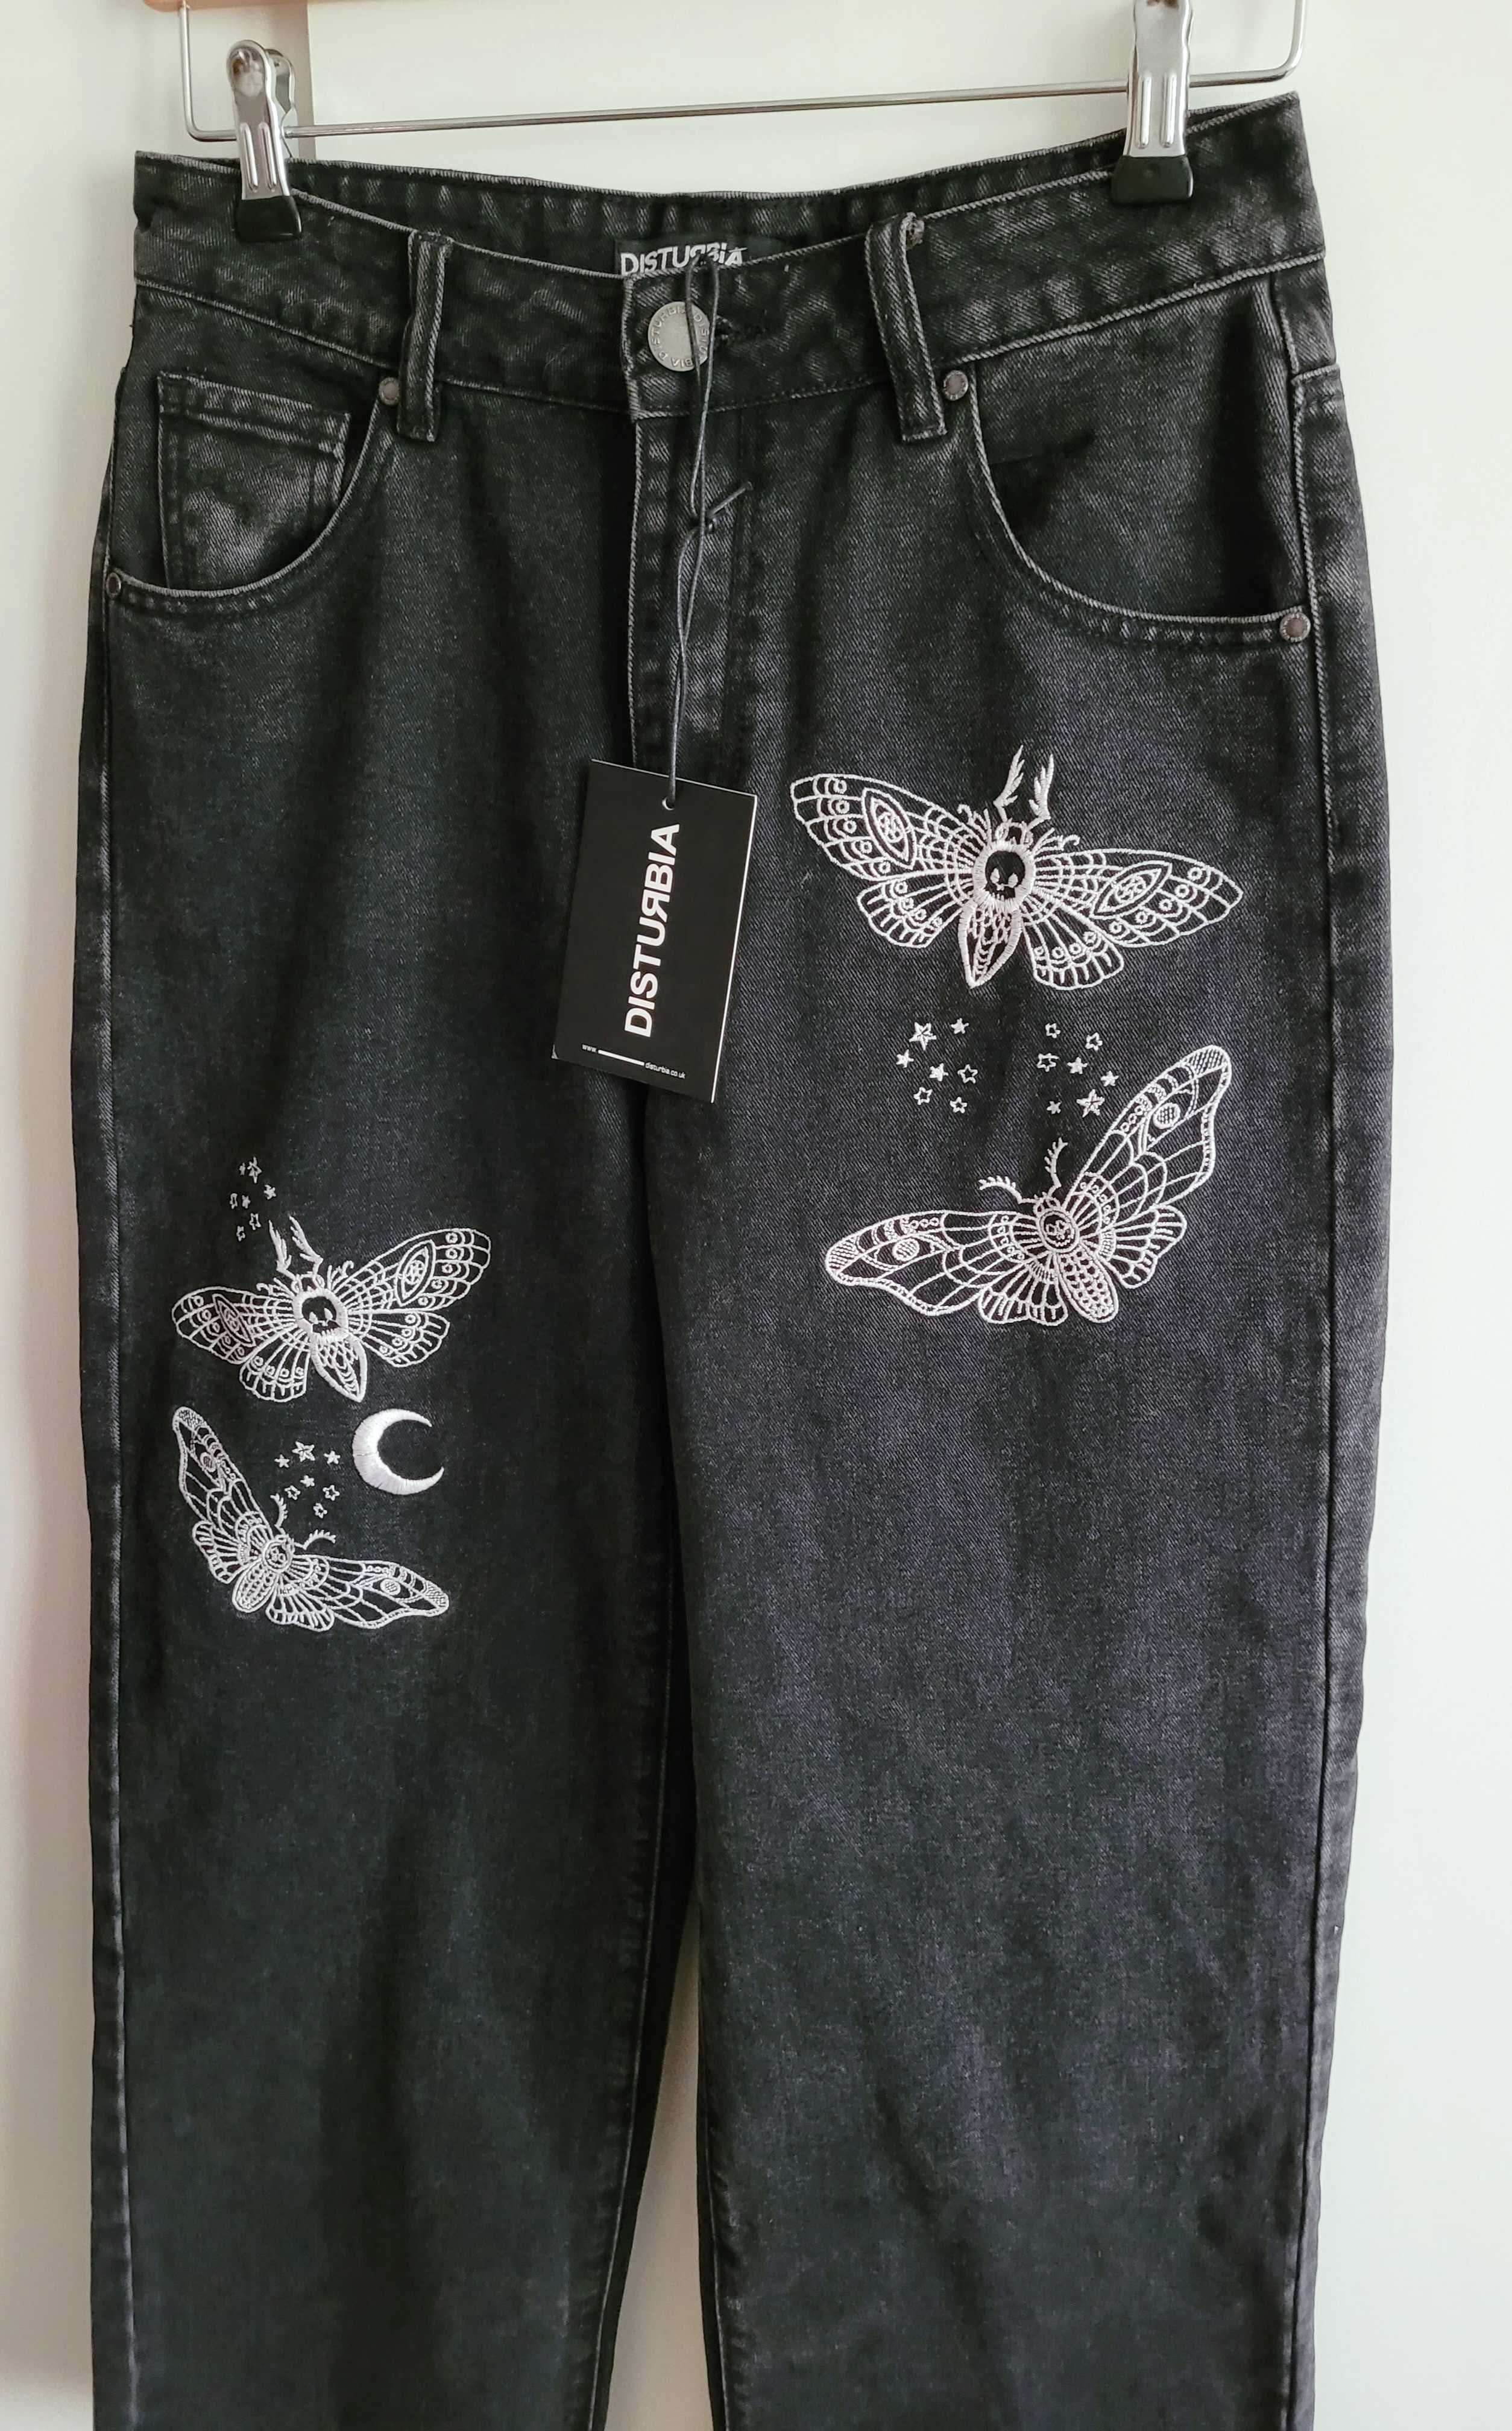 Disturbia jeansy spodnie czarne wide leg szerokie haftowane 28 M 38